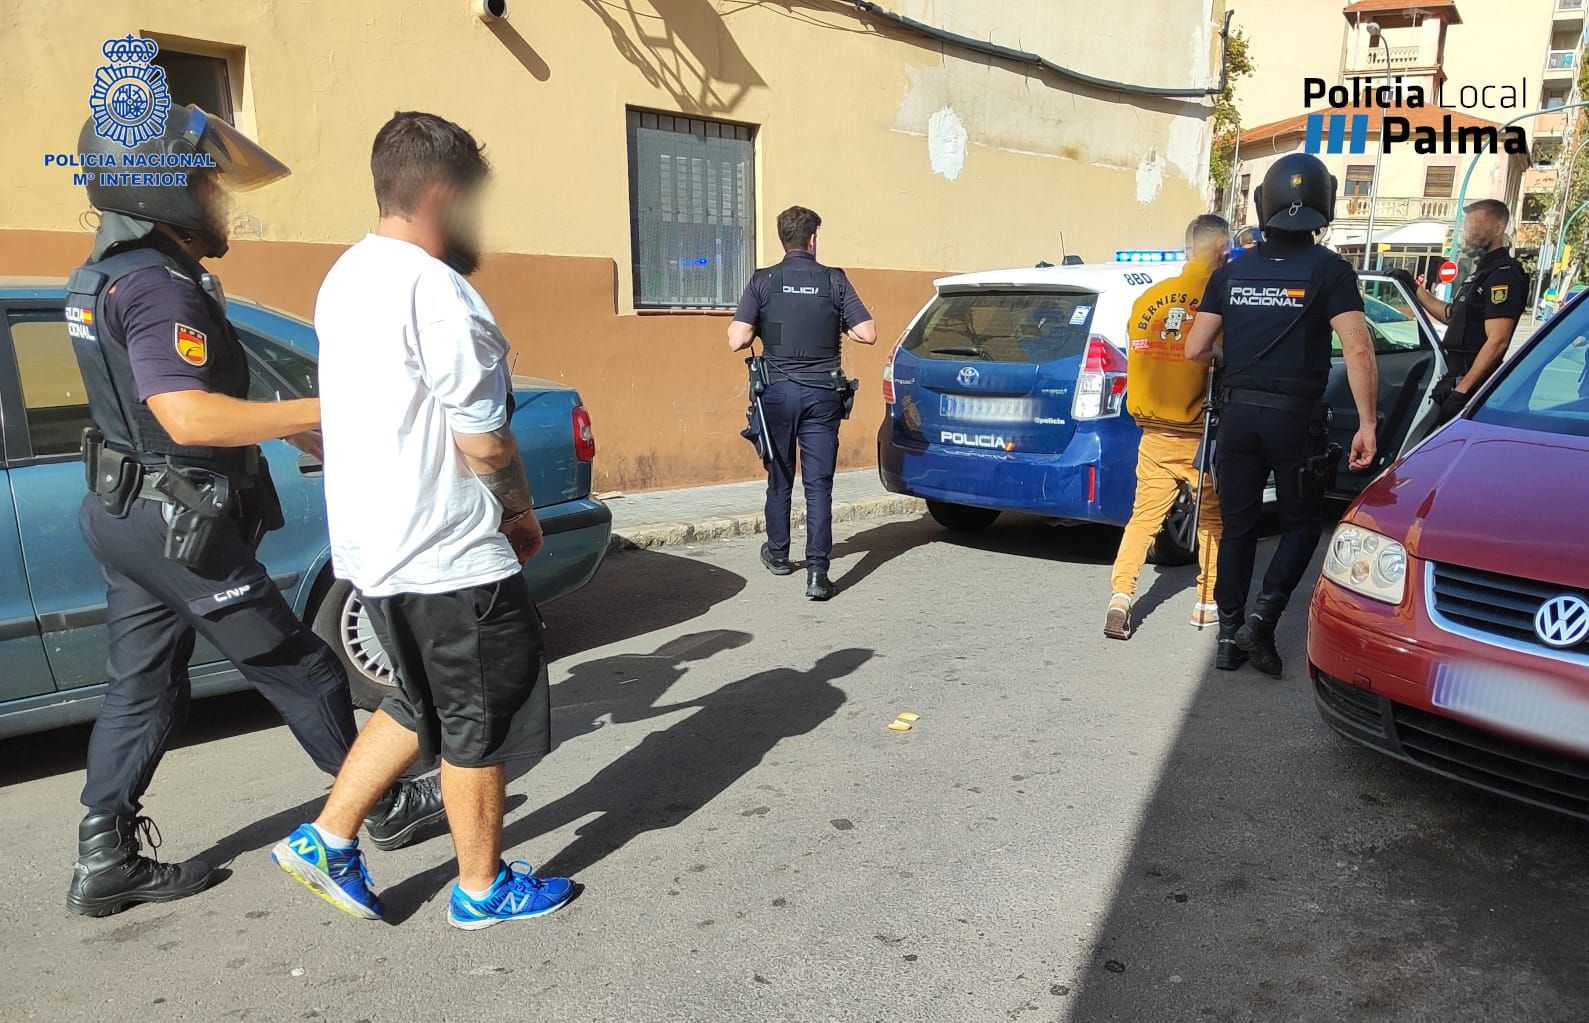 Uno de los narcos detenidos en Palma intentó quemar con un soplete una gran cantidad de dinero